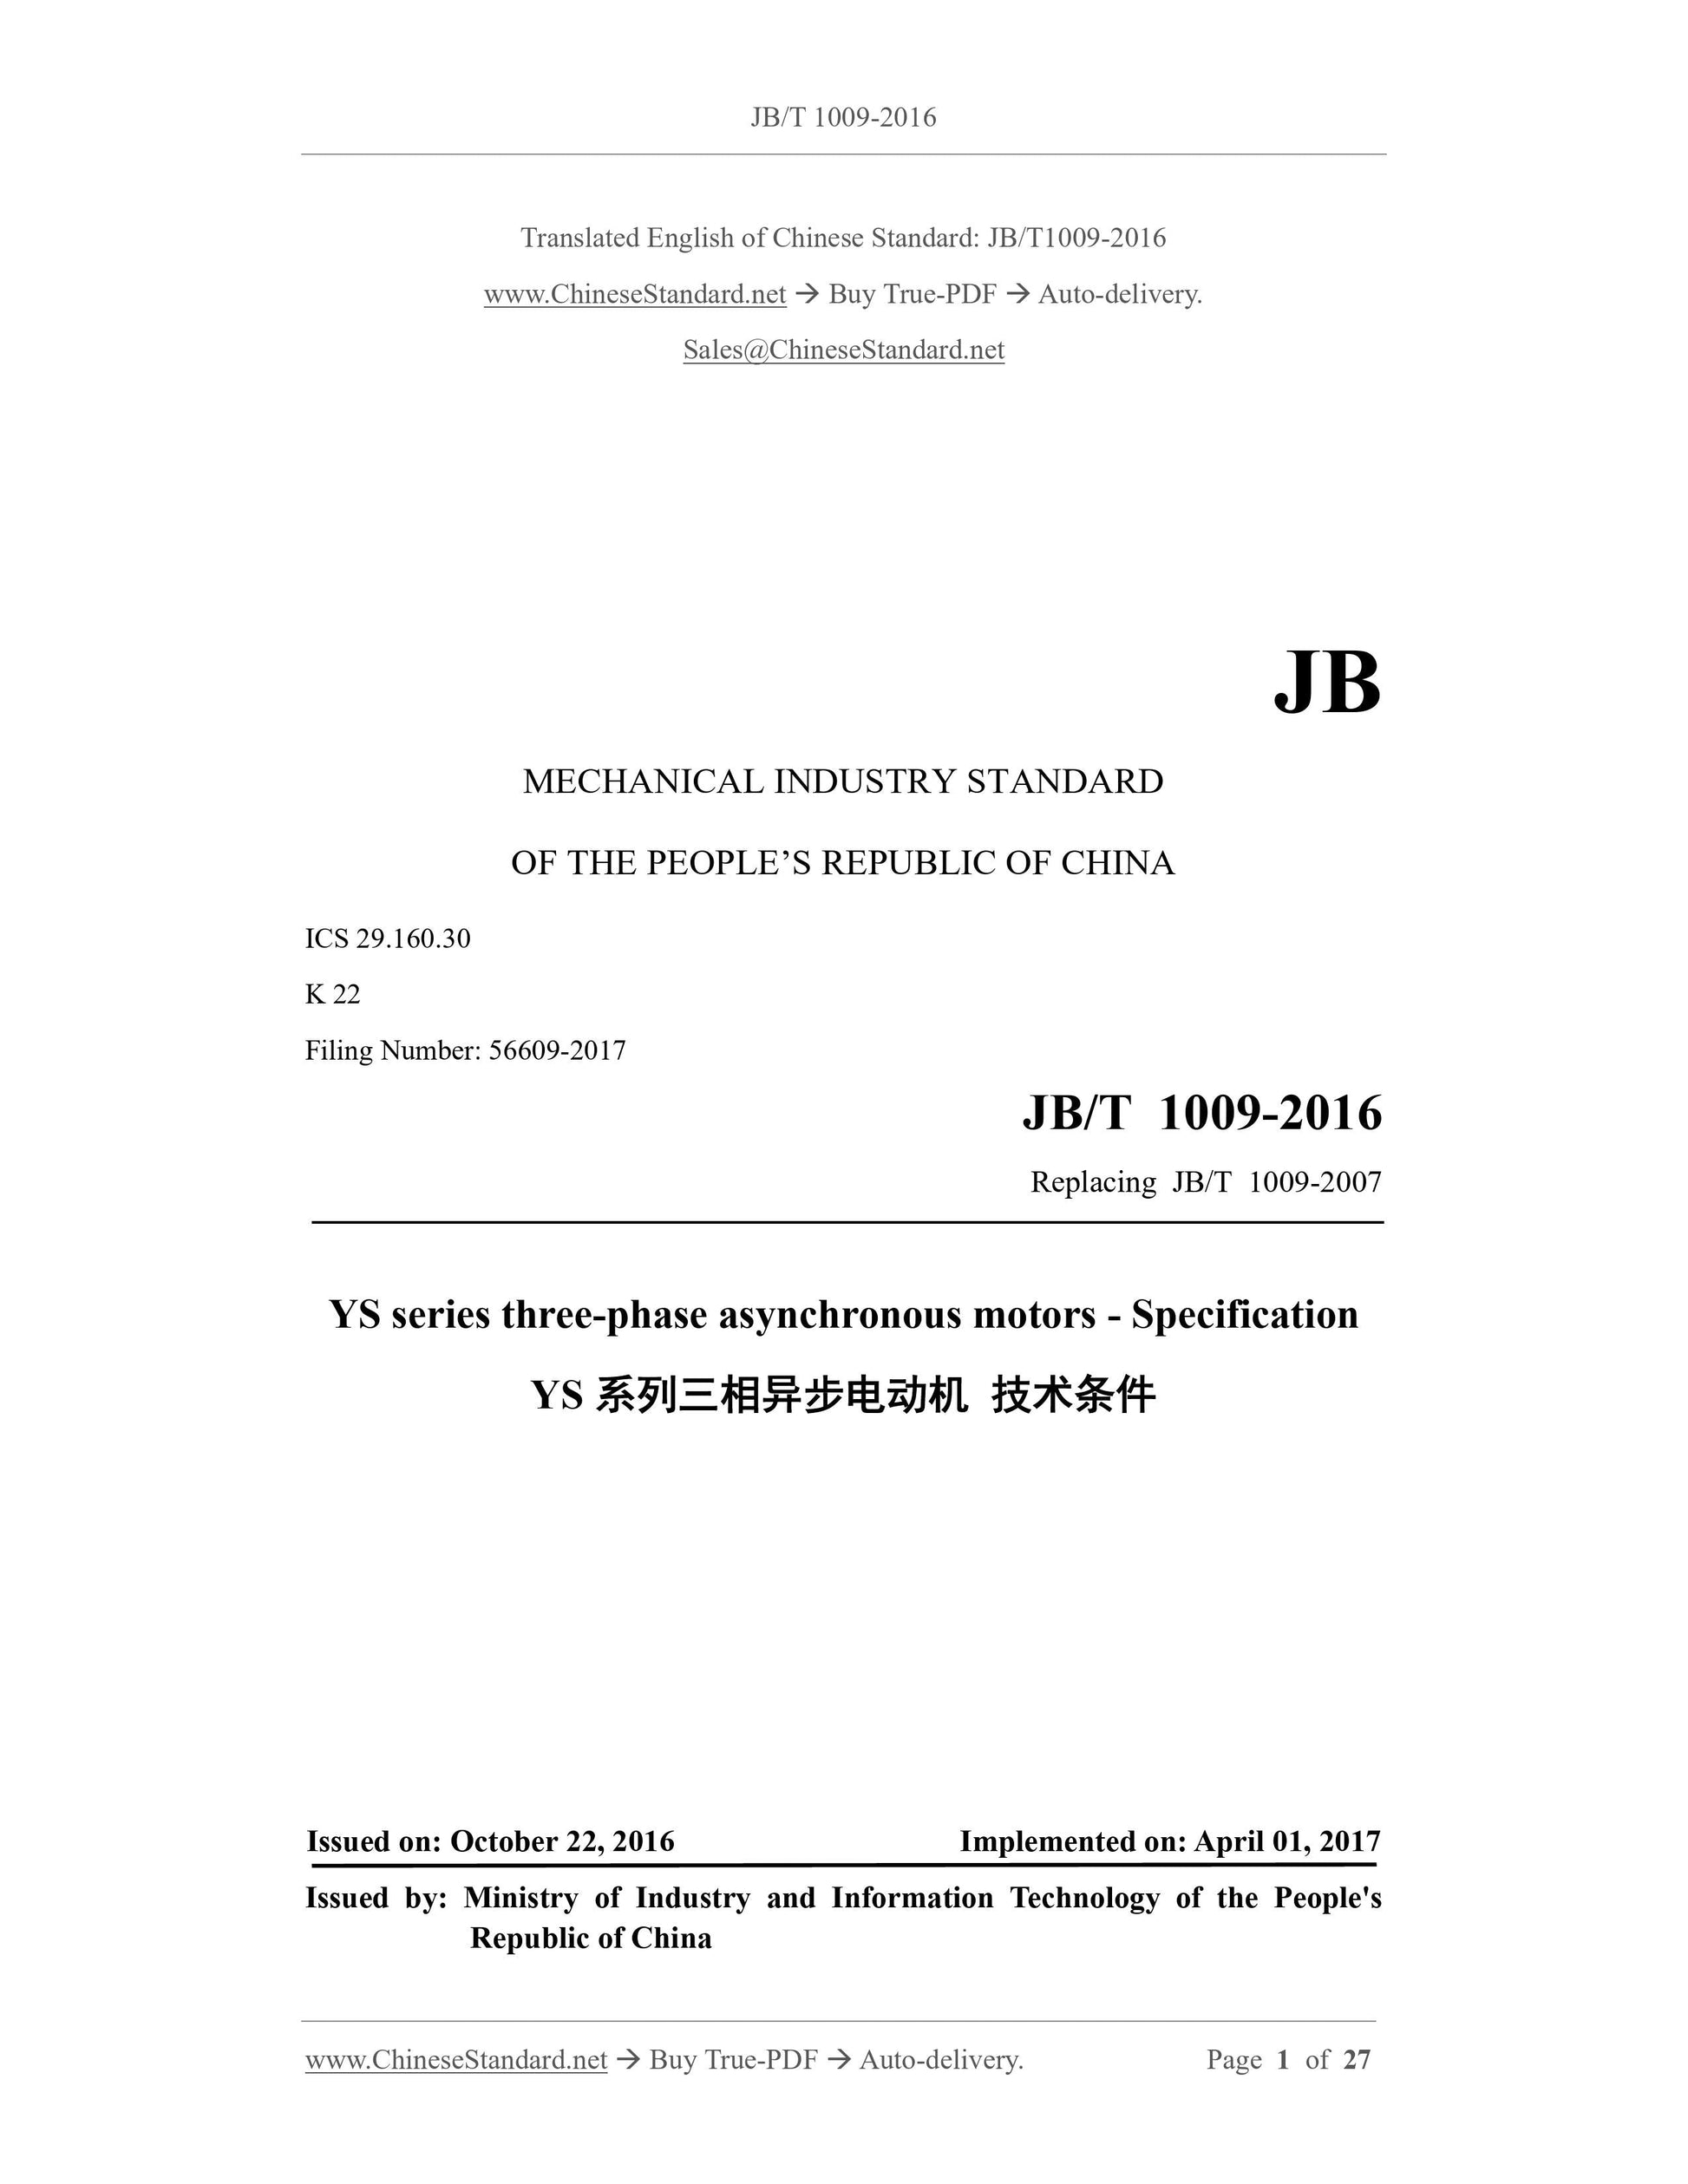 JB/T 1009-2016 Page 1